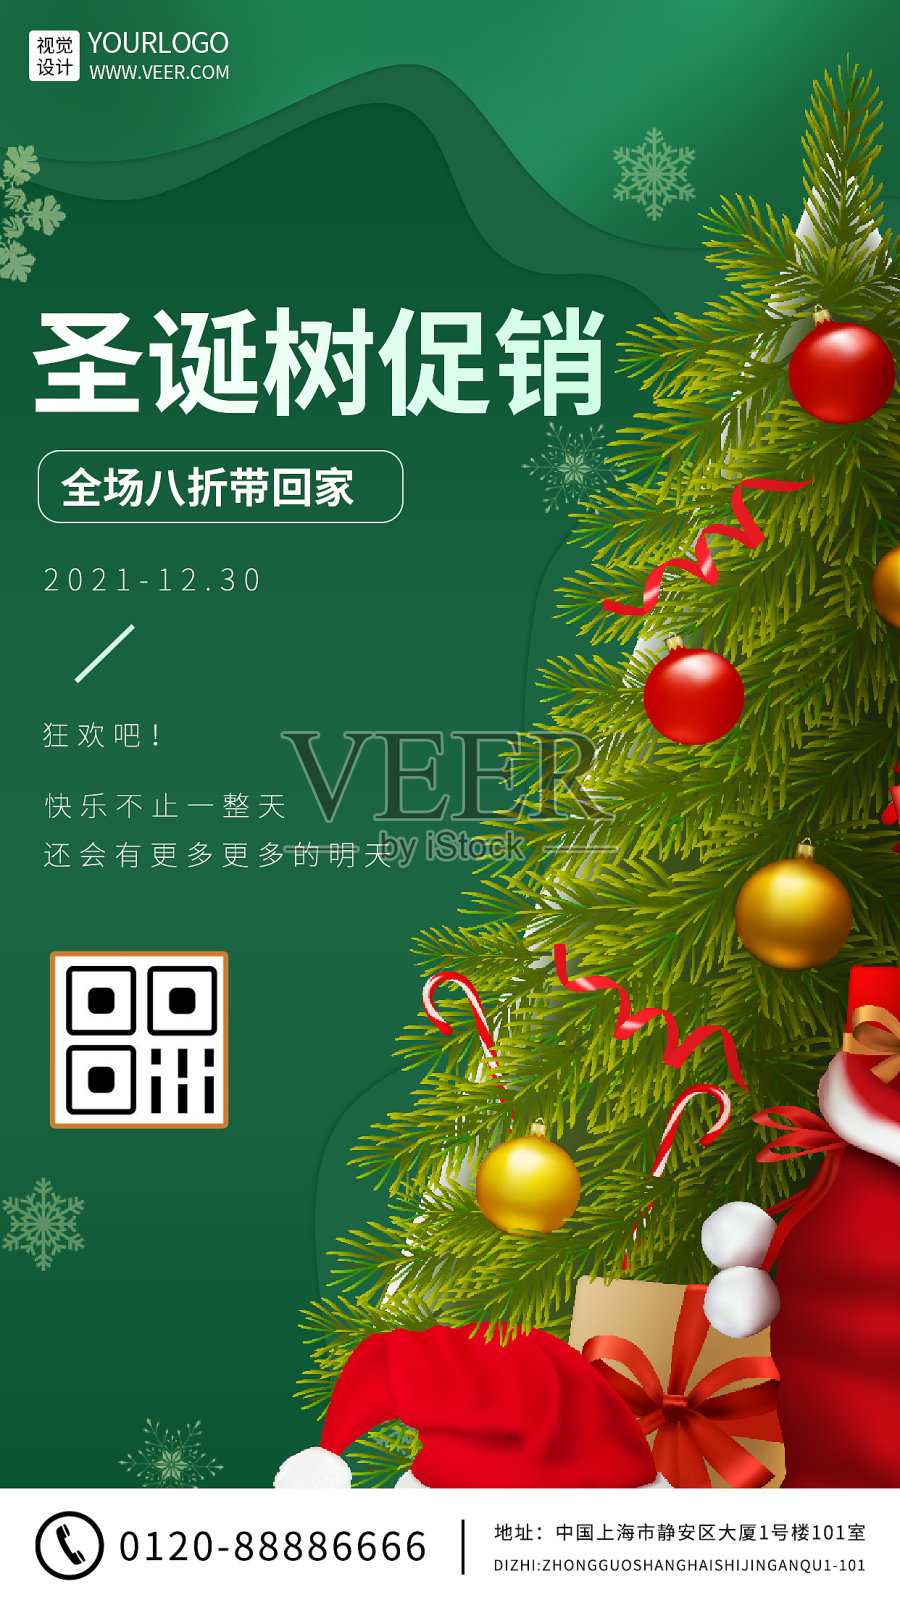 绿色圣诞节圣诞树促销活动手机海报设计模板素材